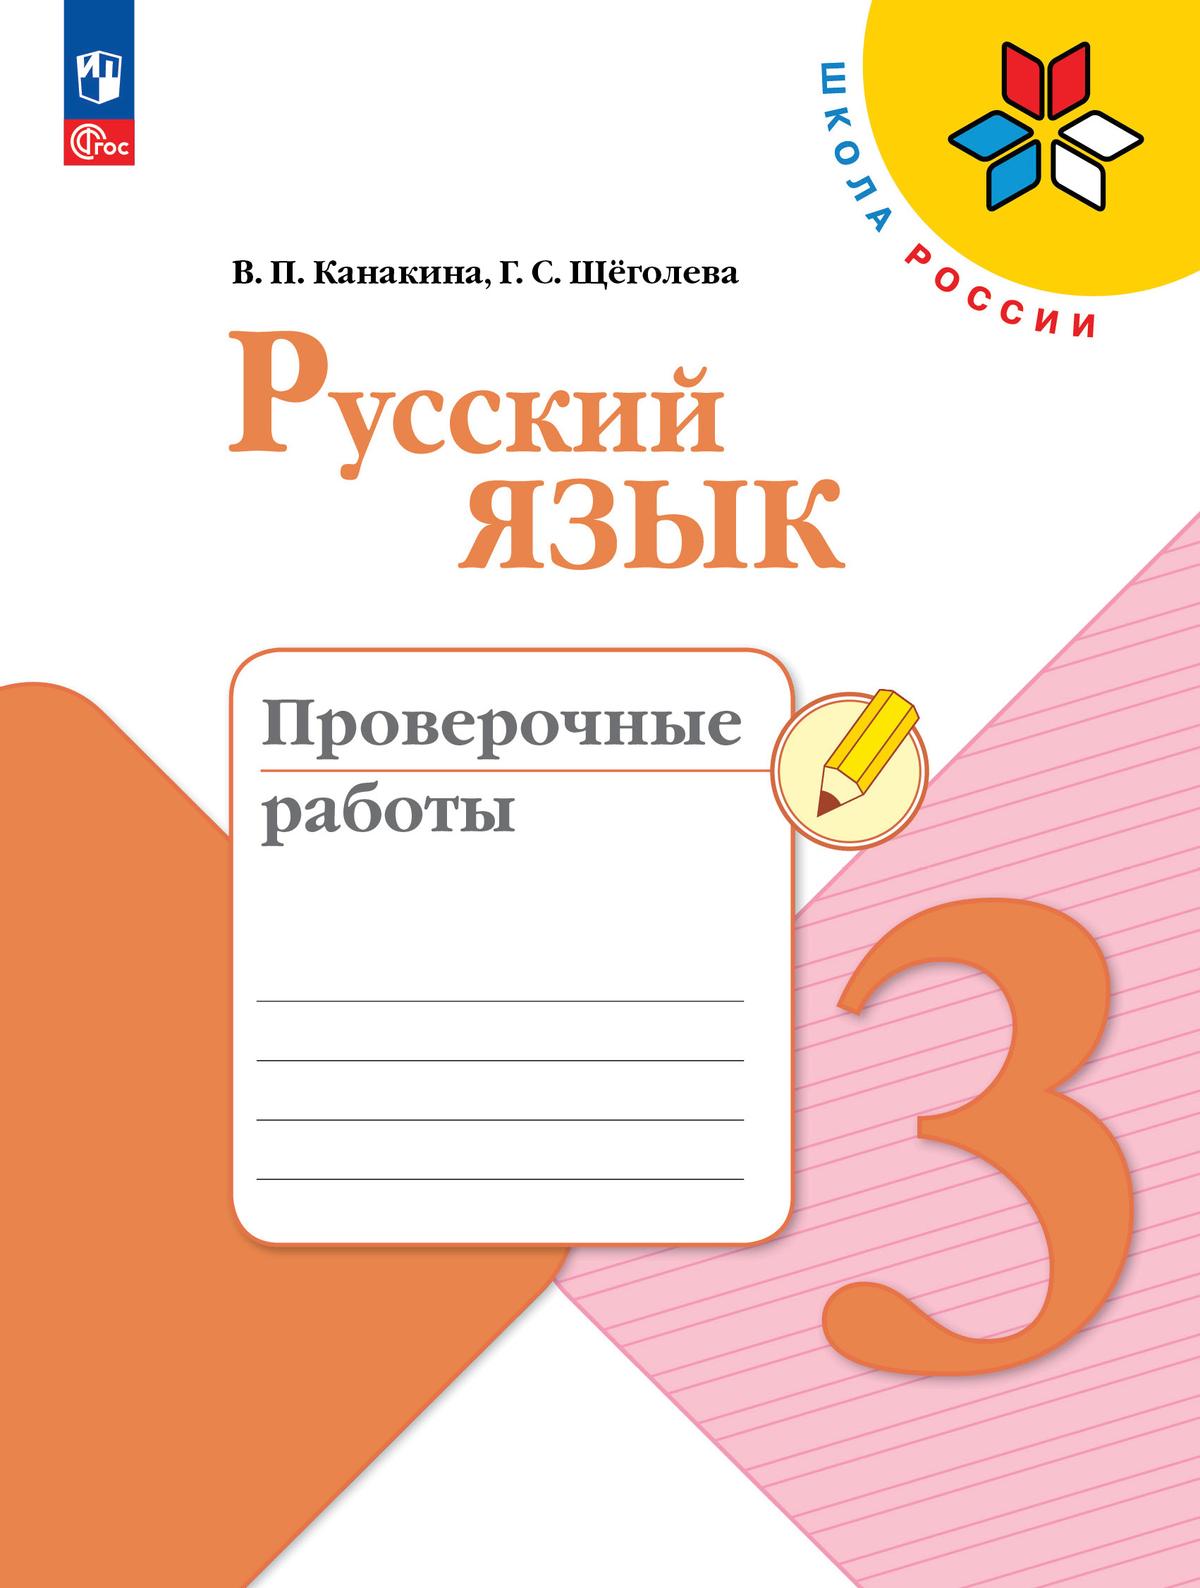 Русский язык. Проверочные работы. 3 класс 1